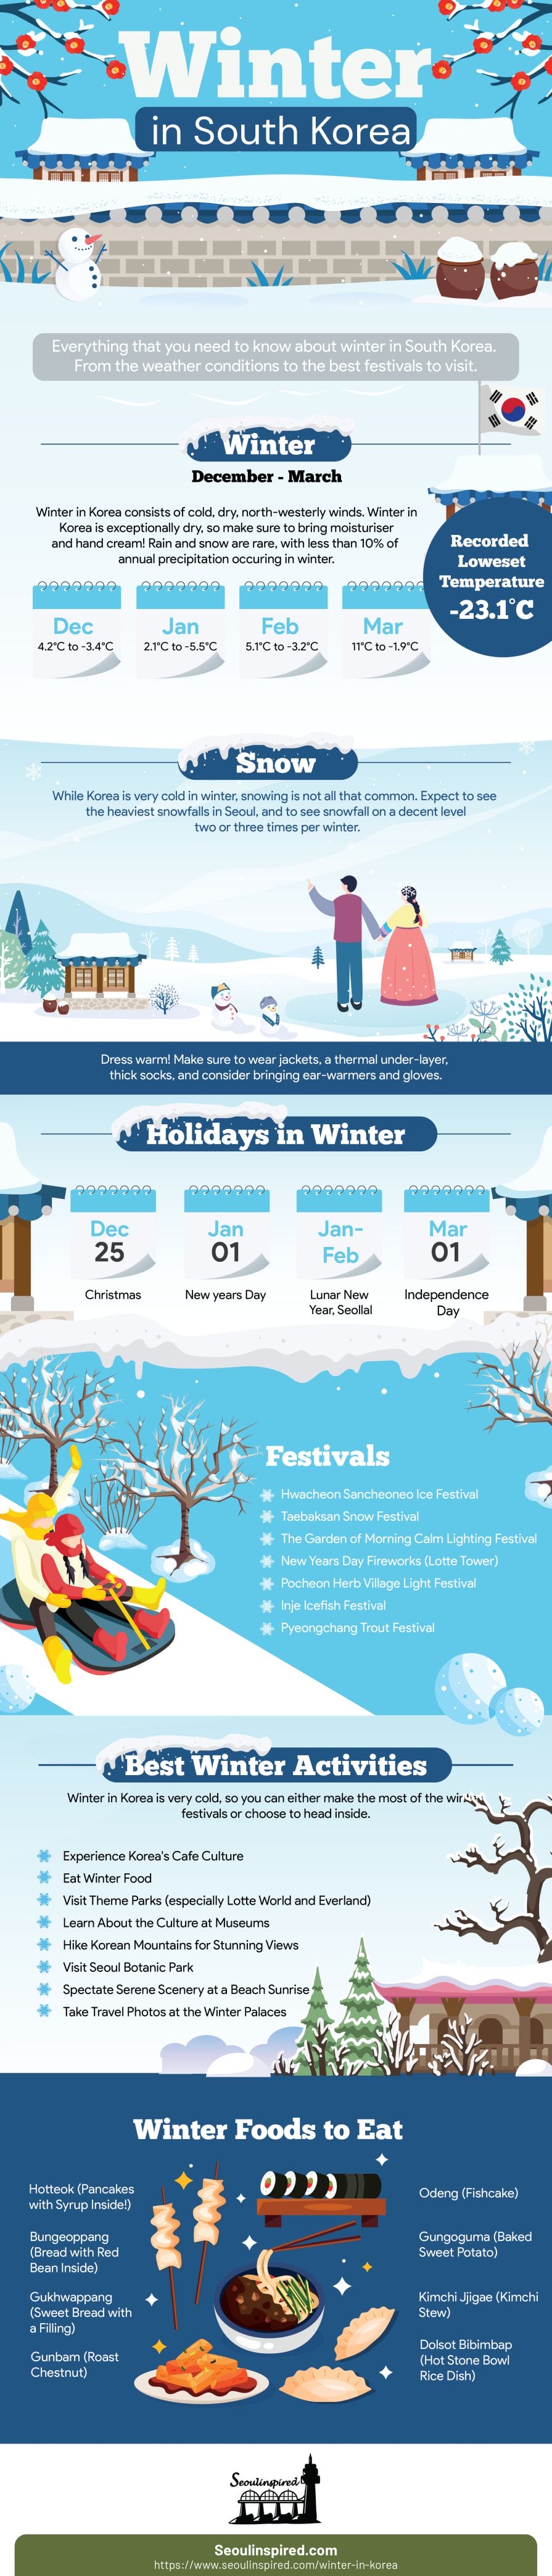 Winter in Korea - 50+ Winter Activities, Winter Weather and More! 2